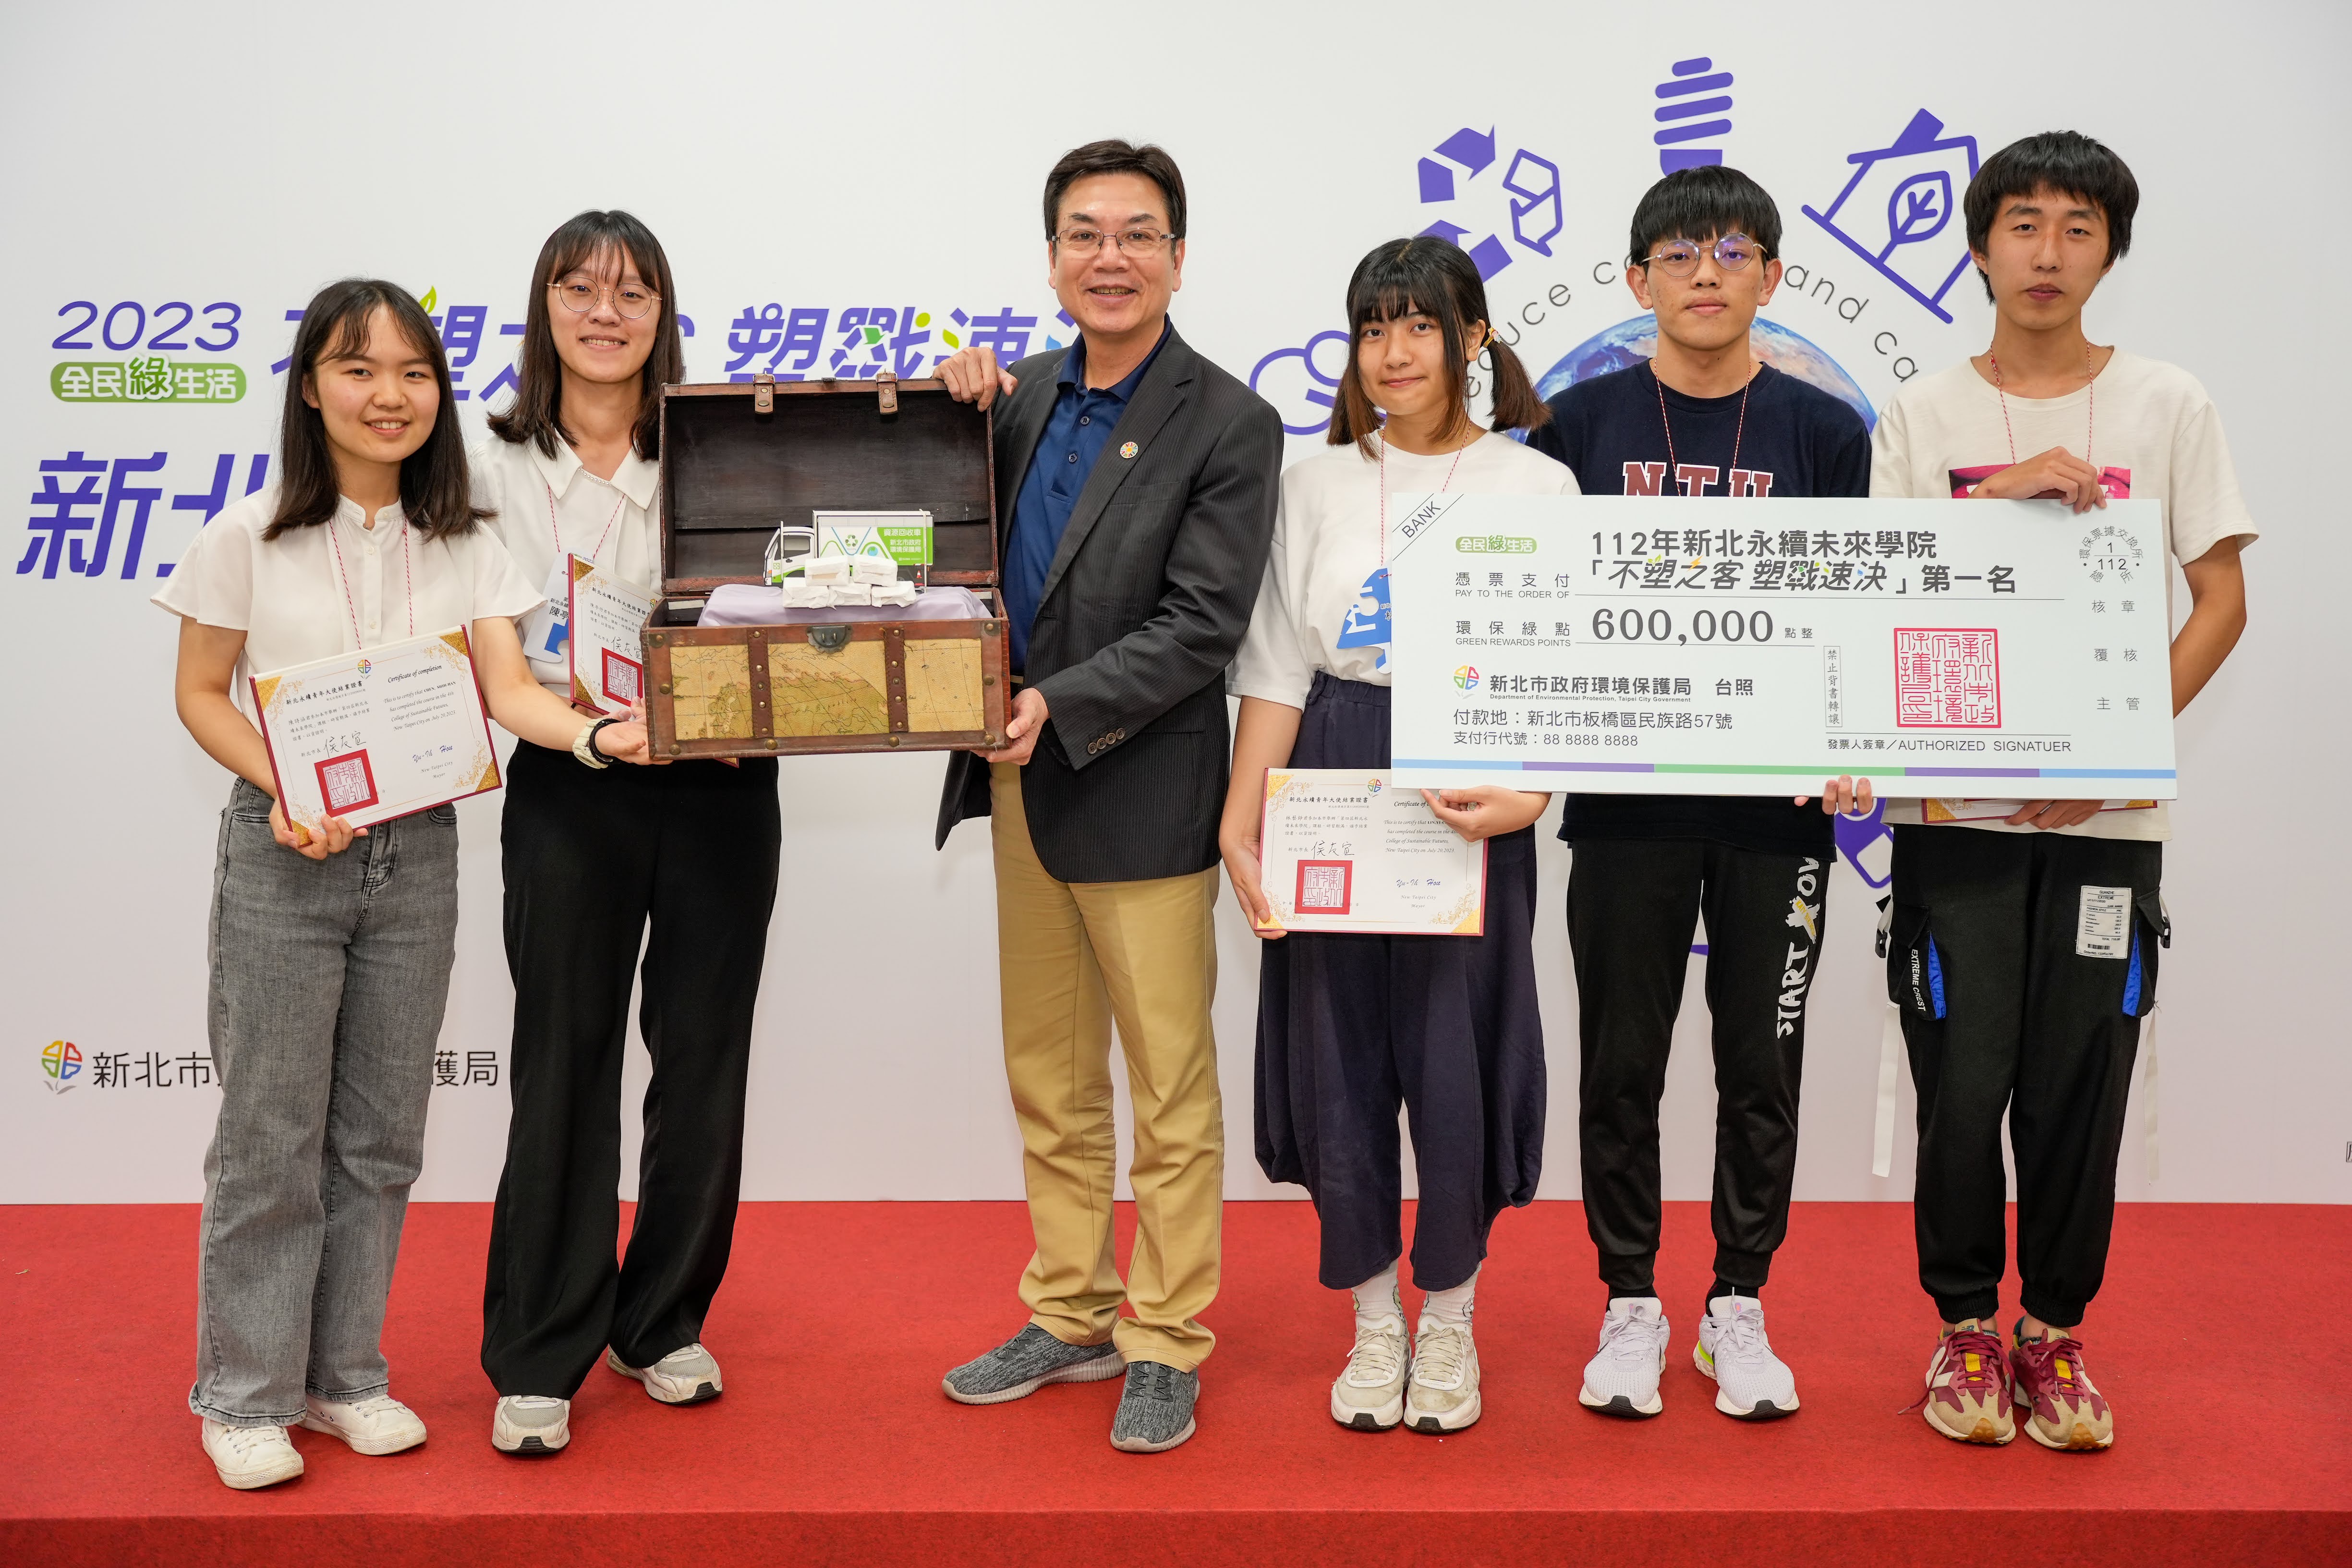 3.劉副市長頒發成果發表獎項及「新北永續青年大使」證書予學員